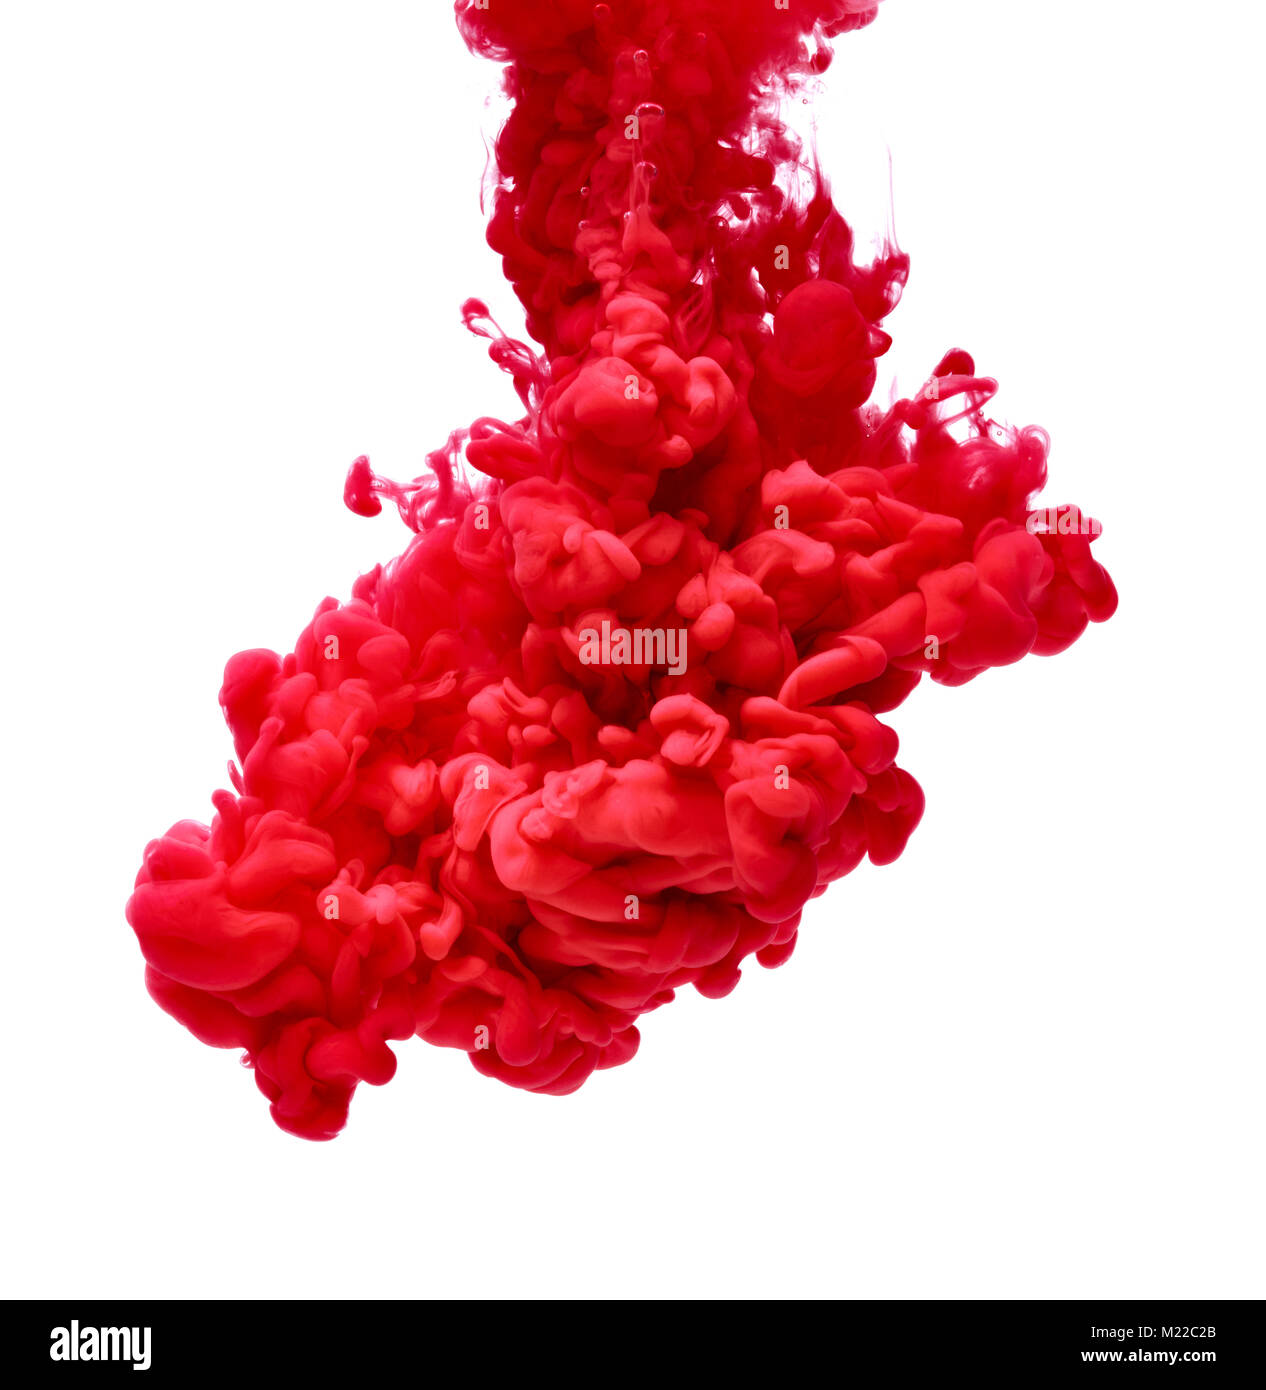 Peinture de couleur rouge verser dans l'eau Banque D'Images